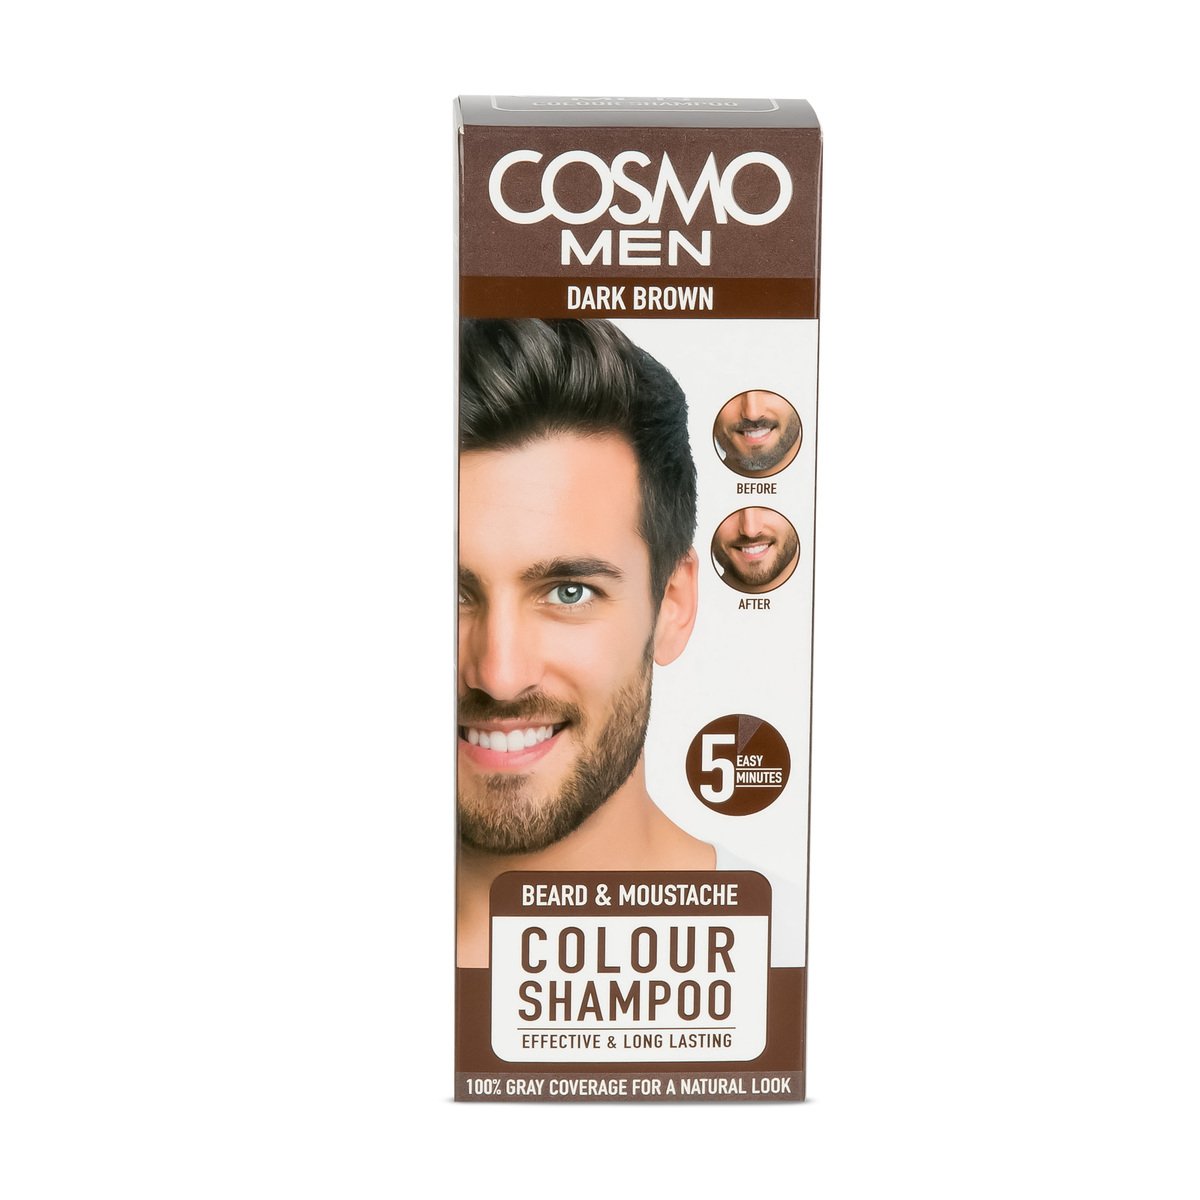 Cosmo Men Beard & Moustache Colour Shampoo Dark Brown 1 pkt